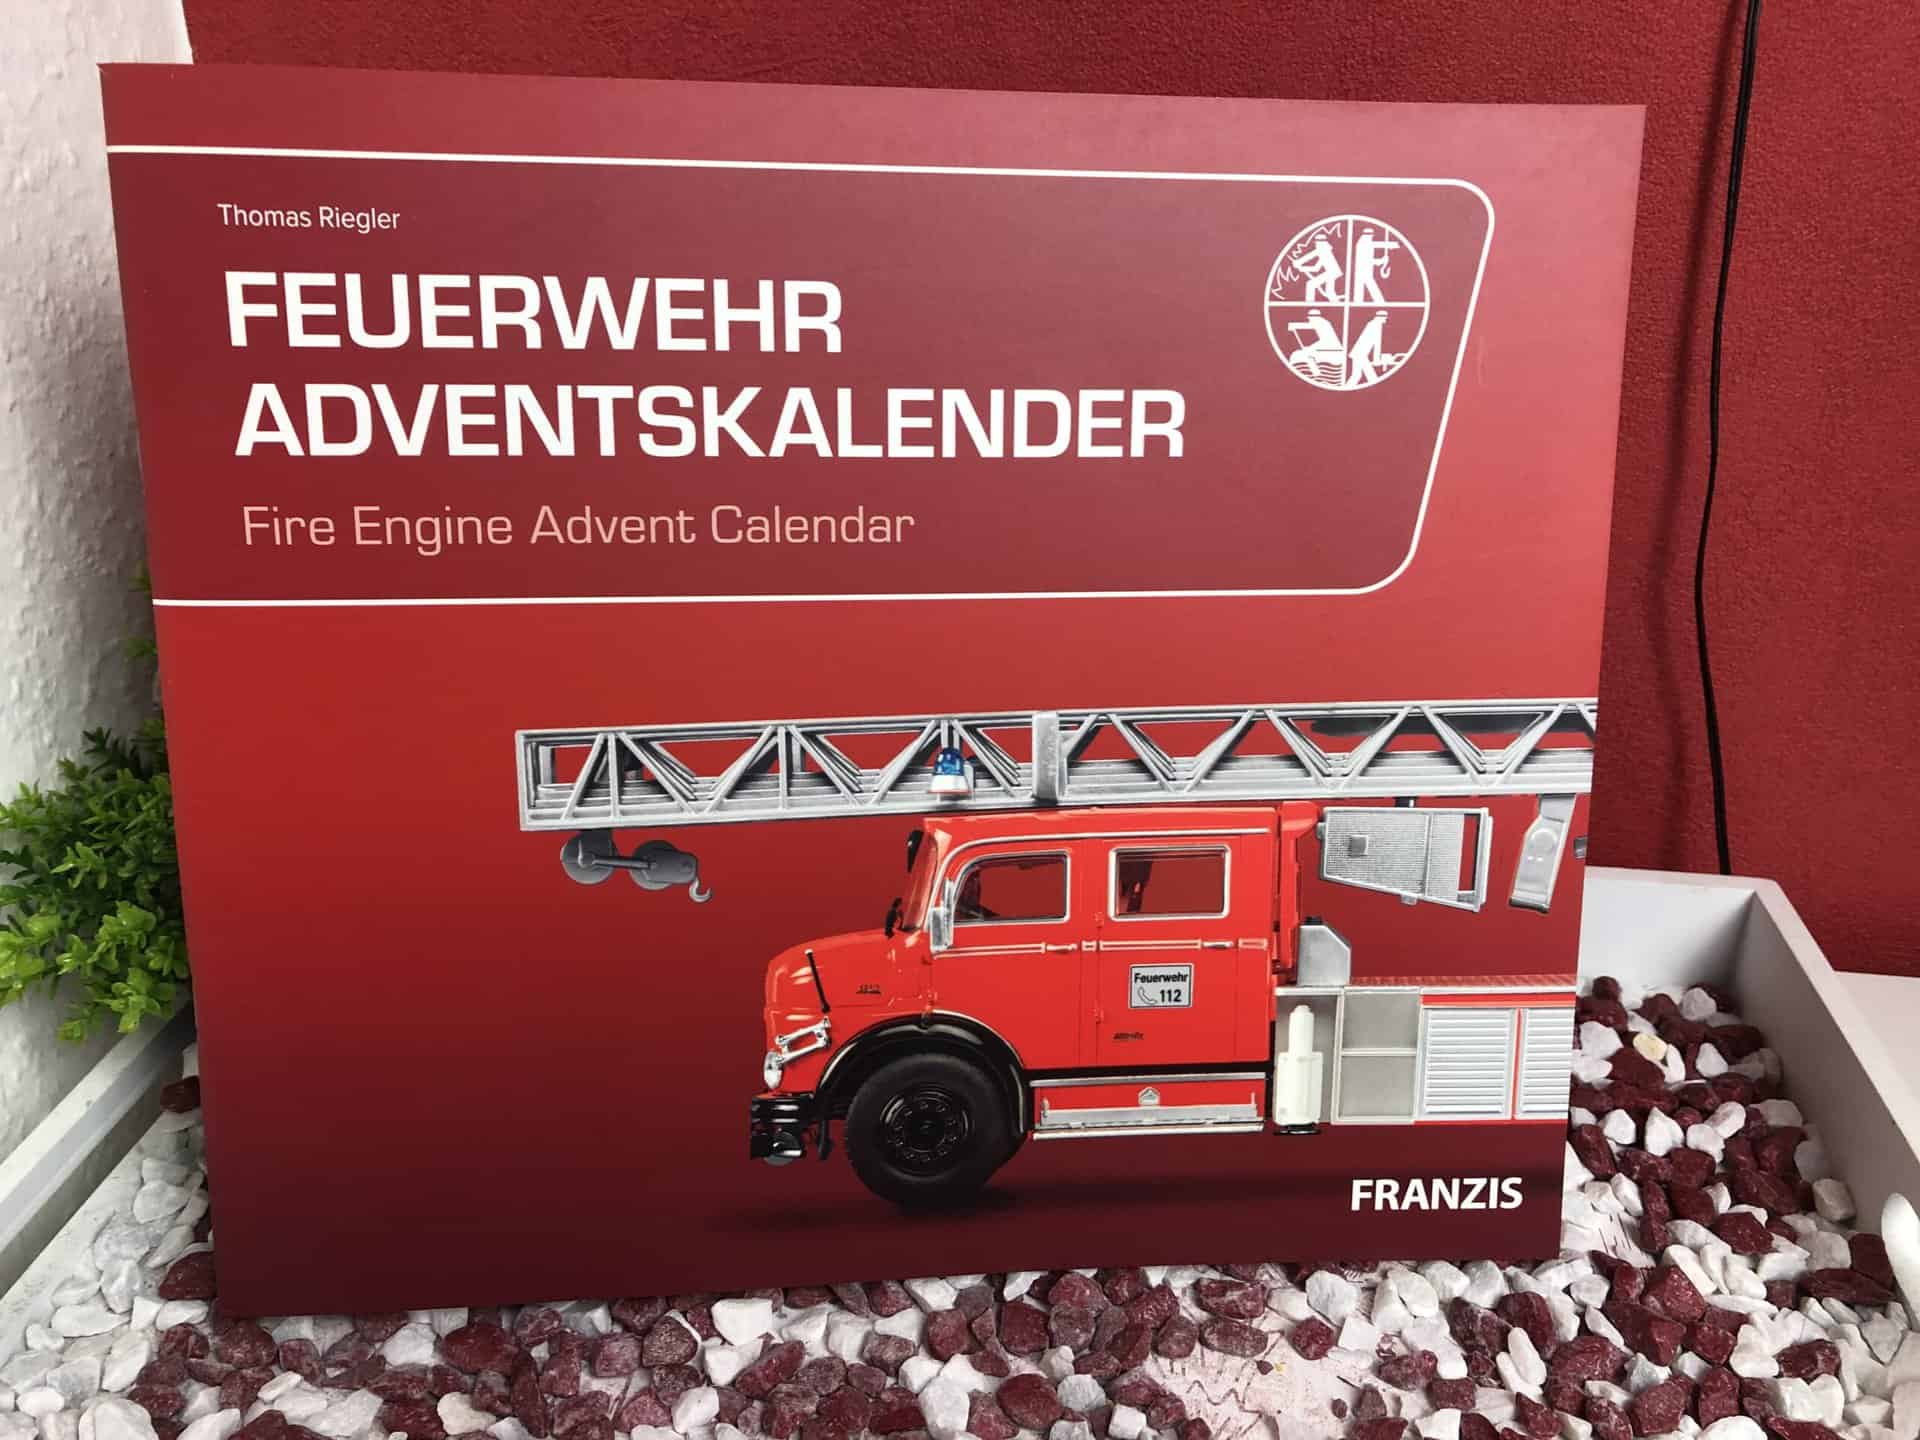 Das Buch mit der Geschichte und den Geschichten sowie der Anleitung zum Aufbau des Franzis Feuerwehr Adventskalenders